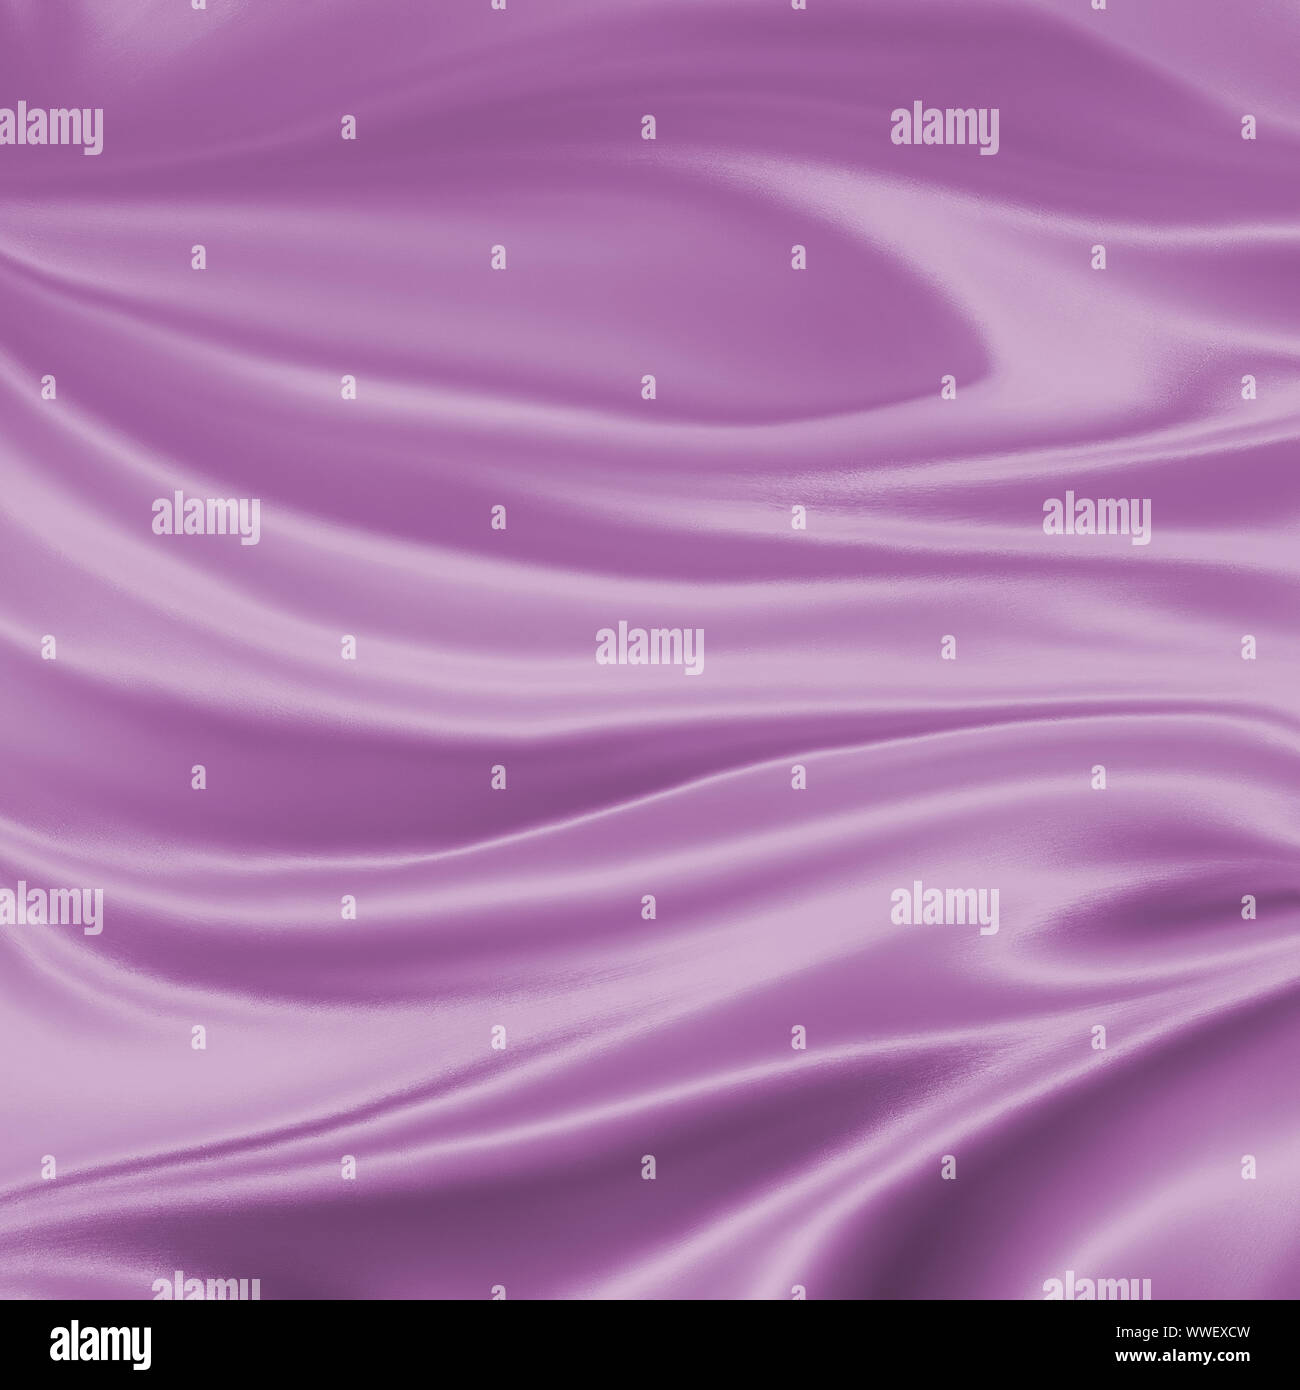 Luxe élégant fond violet pastel illustration avec plis de tissu drapé ondulé et lisse la texture de la soie avec les rides et les plis en fluide Banque D'Images